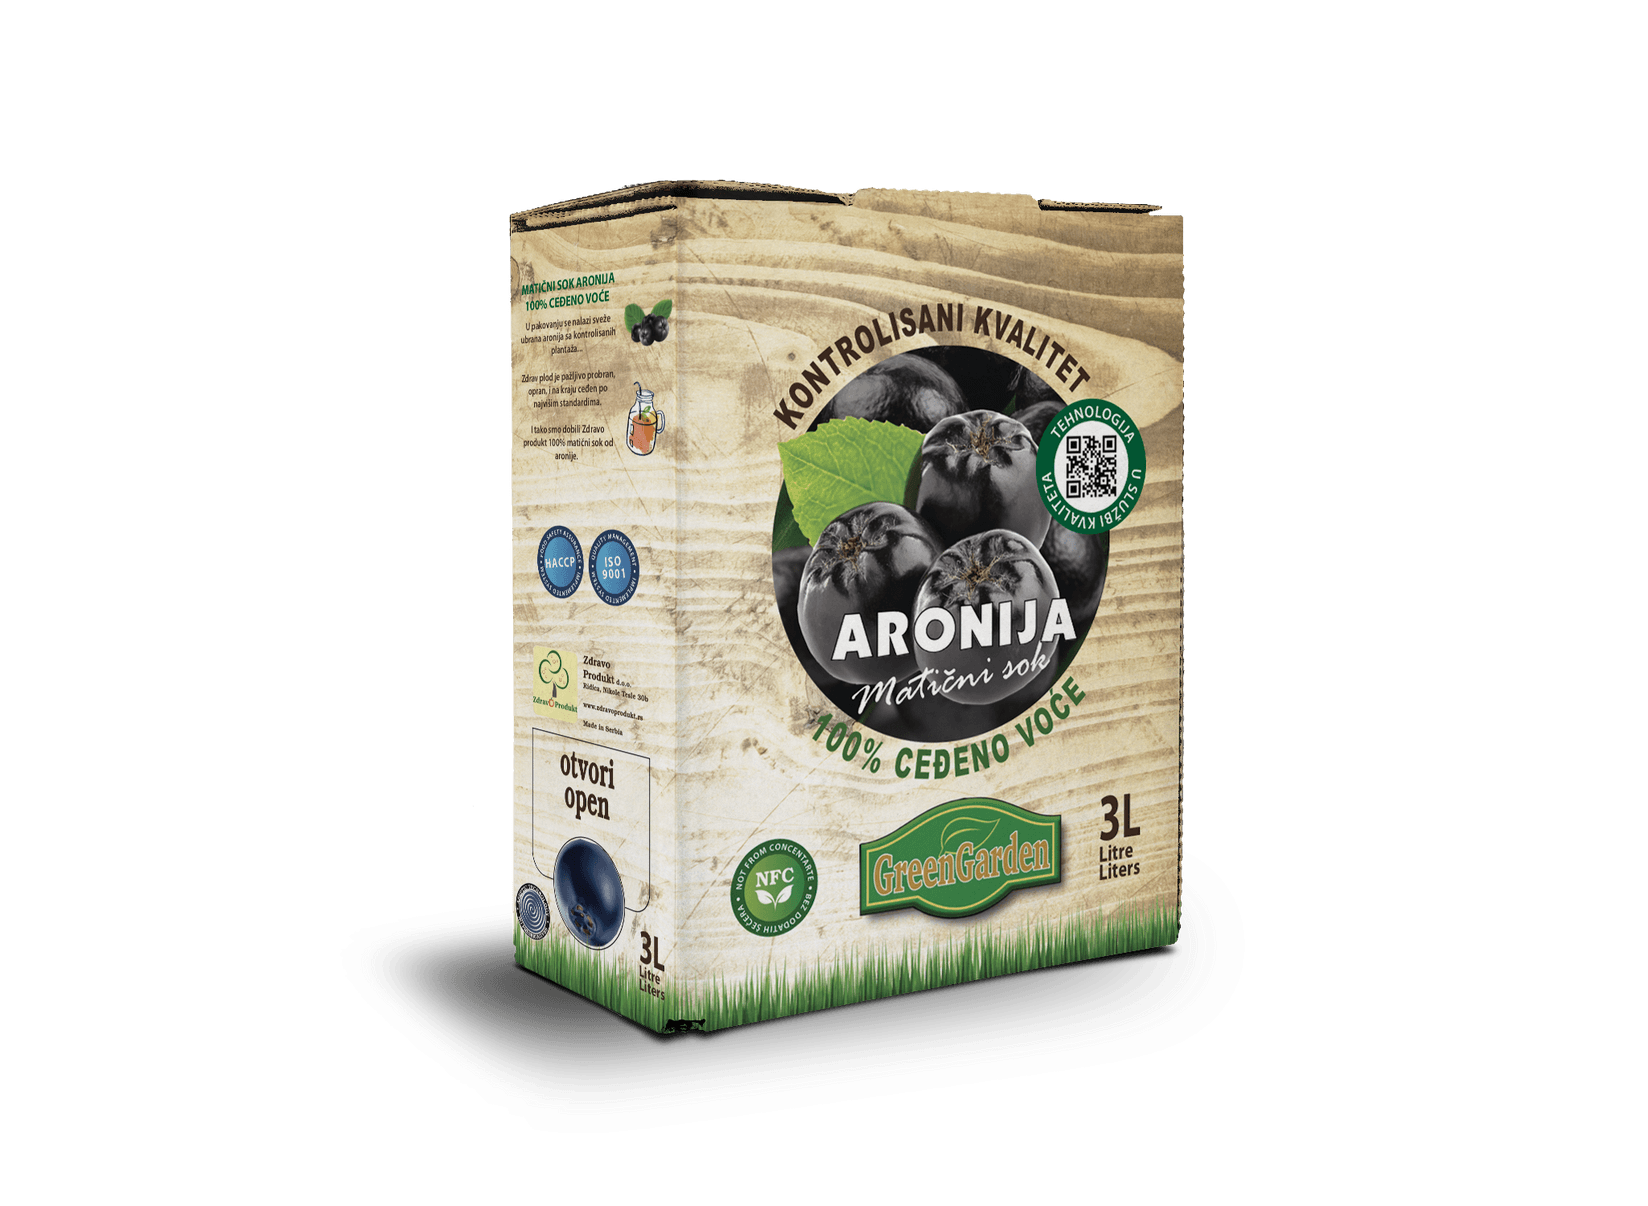 GREEN GARDEN Matični sok Aronija 100%, BAG IN BOX, 3l